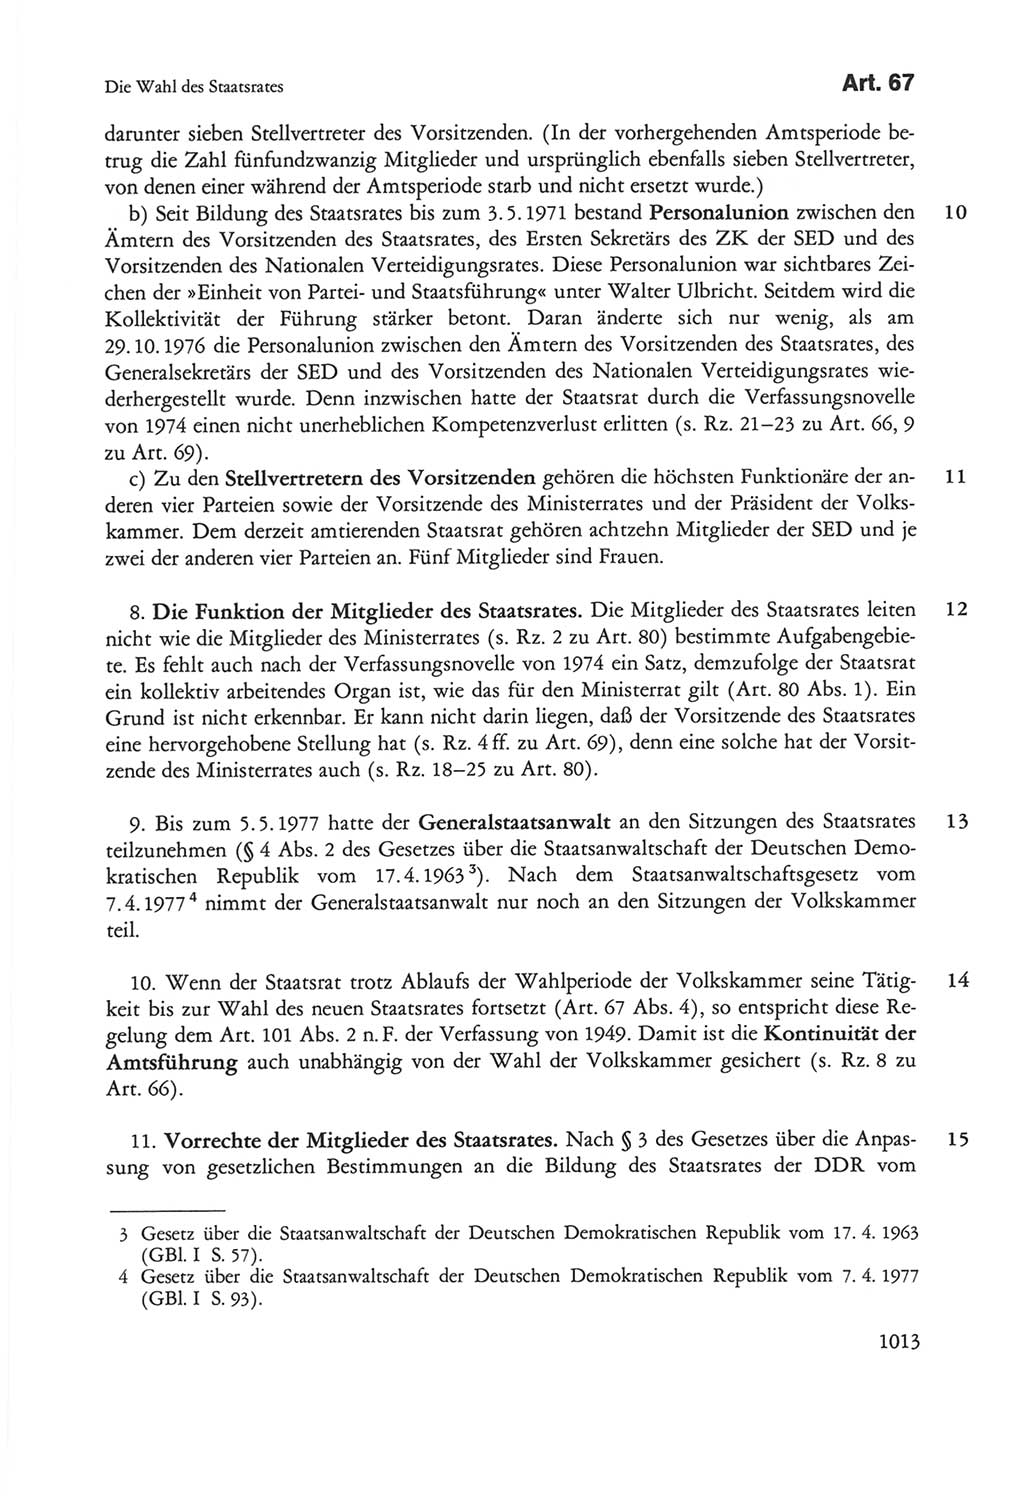 Die sozialistische Verfassung der Deutschen Demokratischen Republik (DDR), Kommentar 1982, Seite 1013 (Soz. Verf. DDR Komm. 1982, S. 1013)